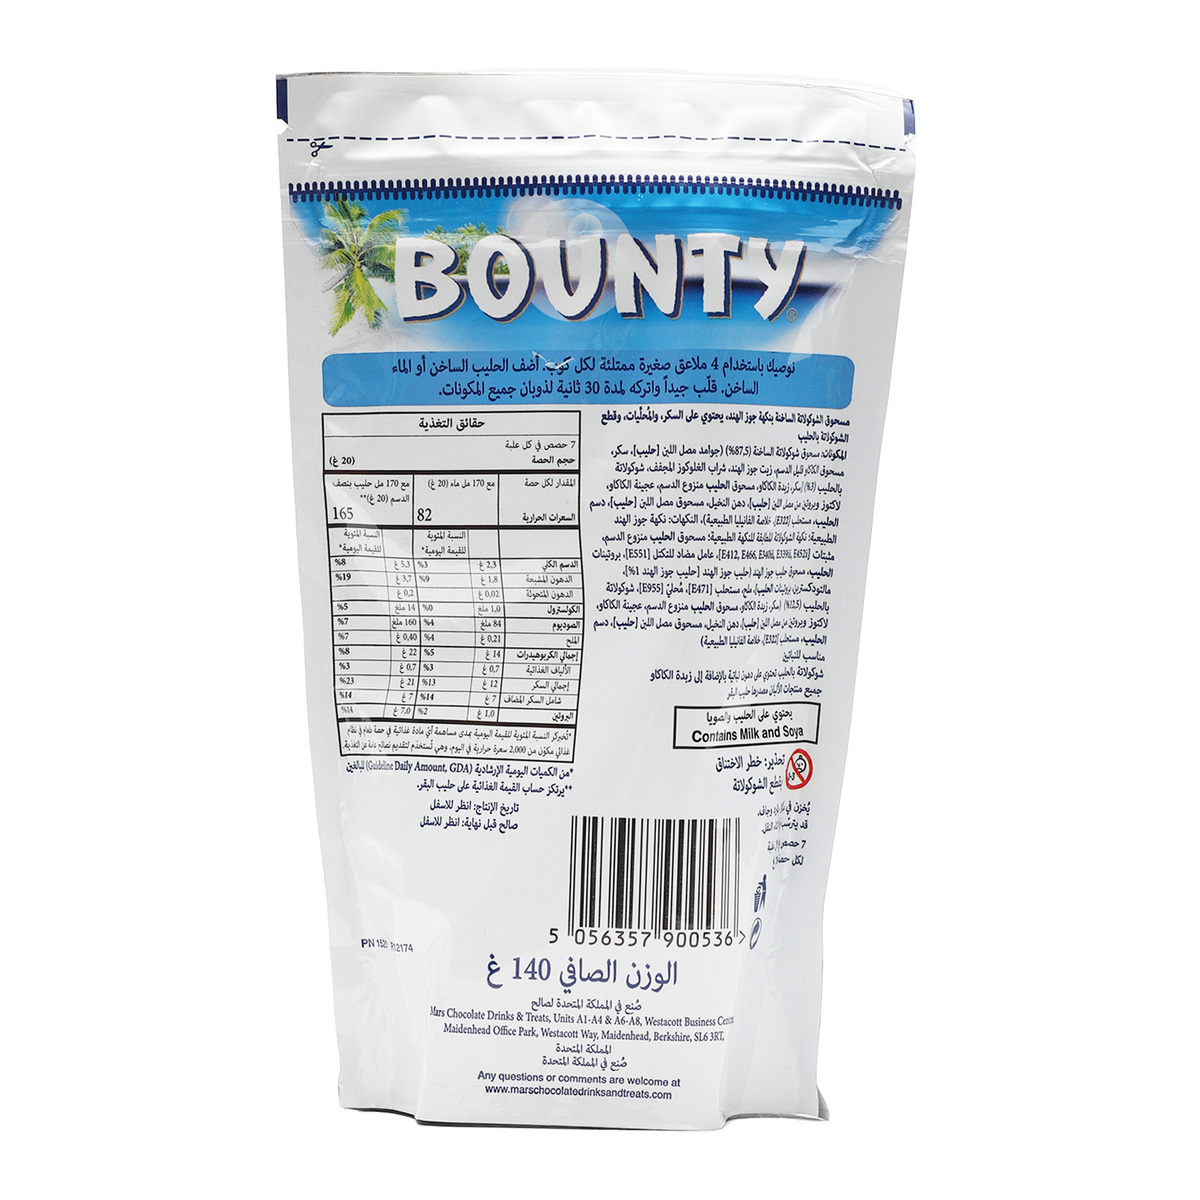 Bounty Cocoa Powder Pouch 140g